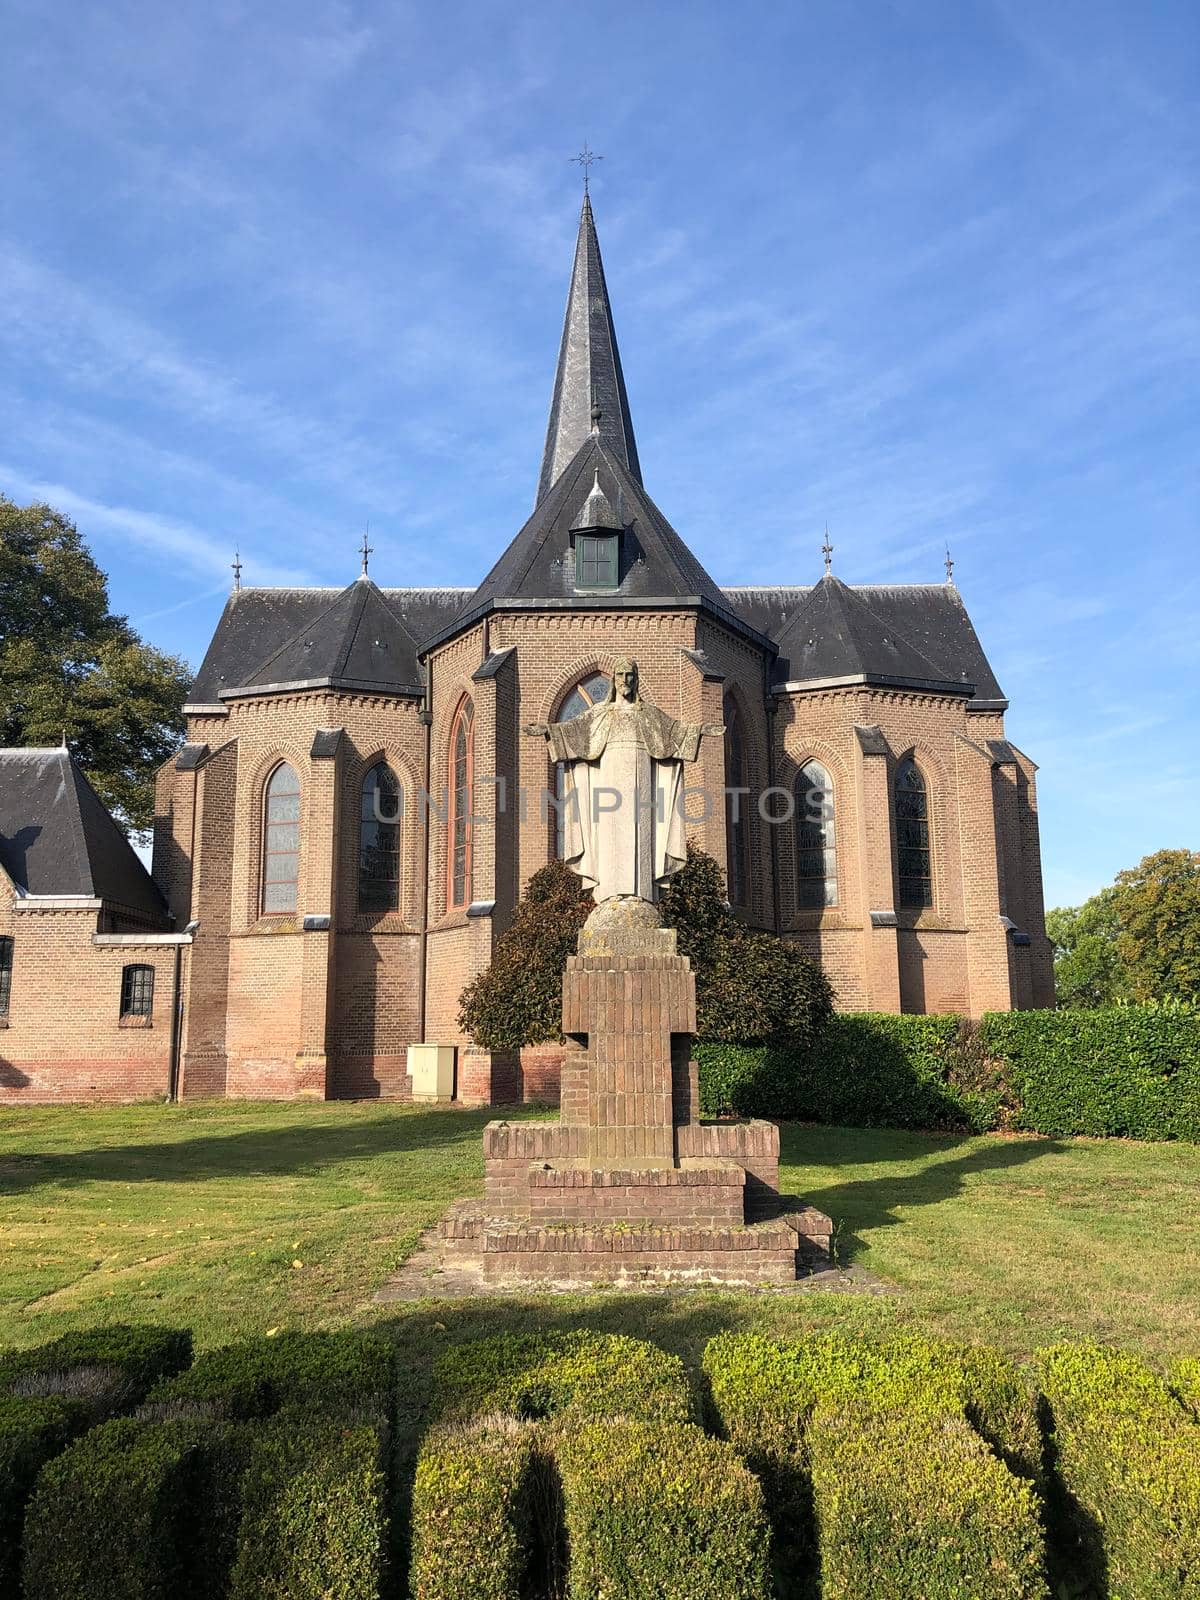 St. Martinus church in Beek Gem Montferland, The Netherlands by traveltelly